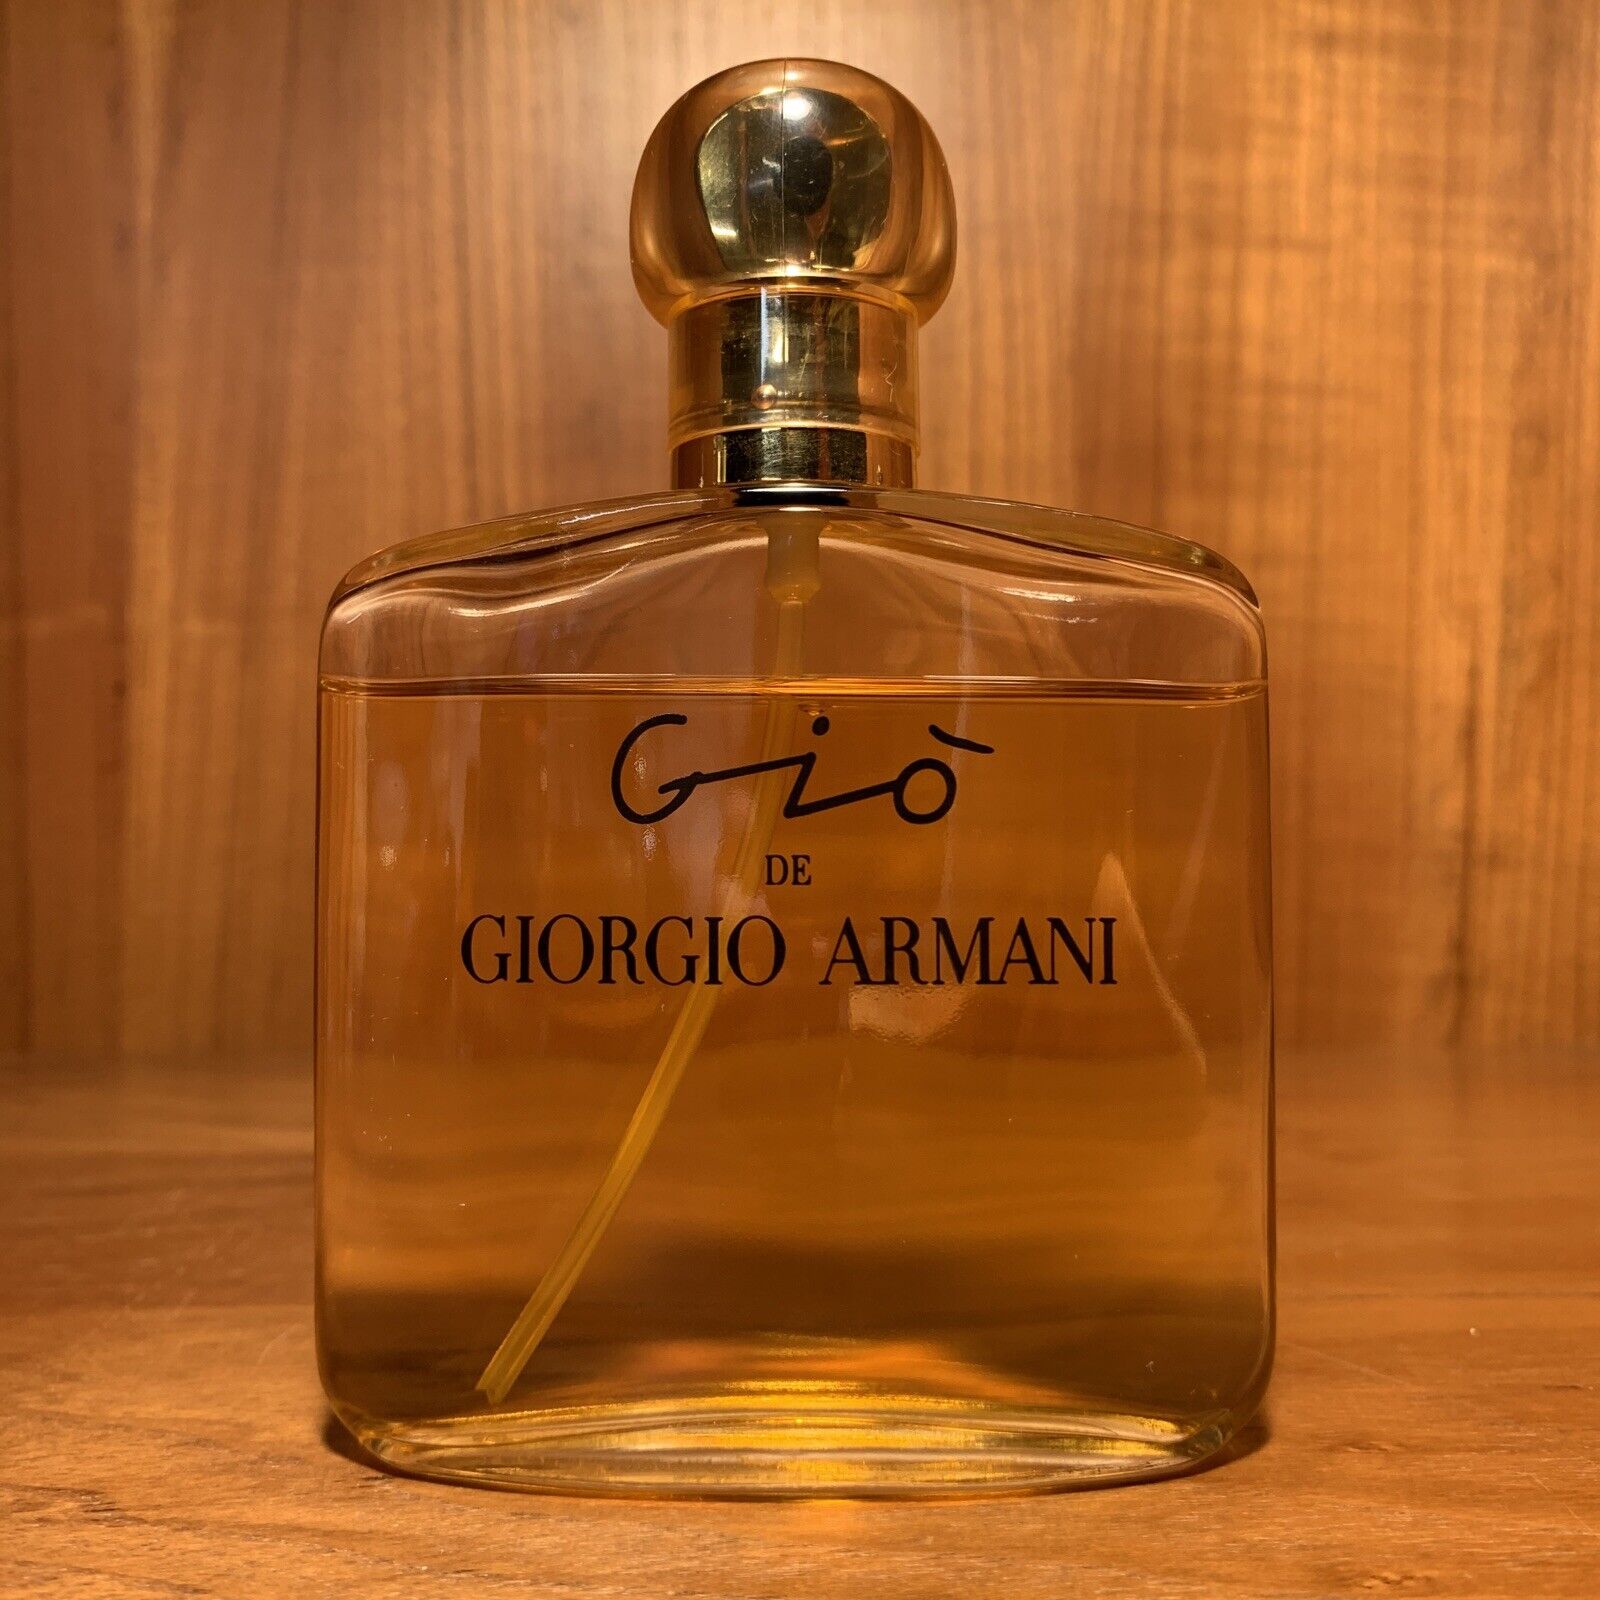 Gio de Giorgio Armani 3.4 oz 100 ml Eau de Parfum Vintage Rare Demonstration